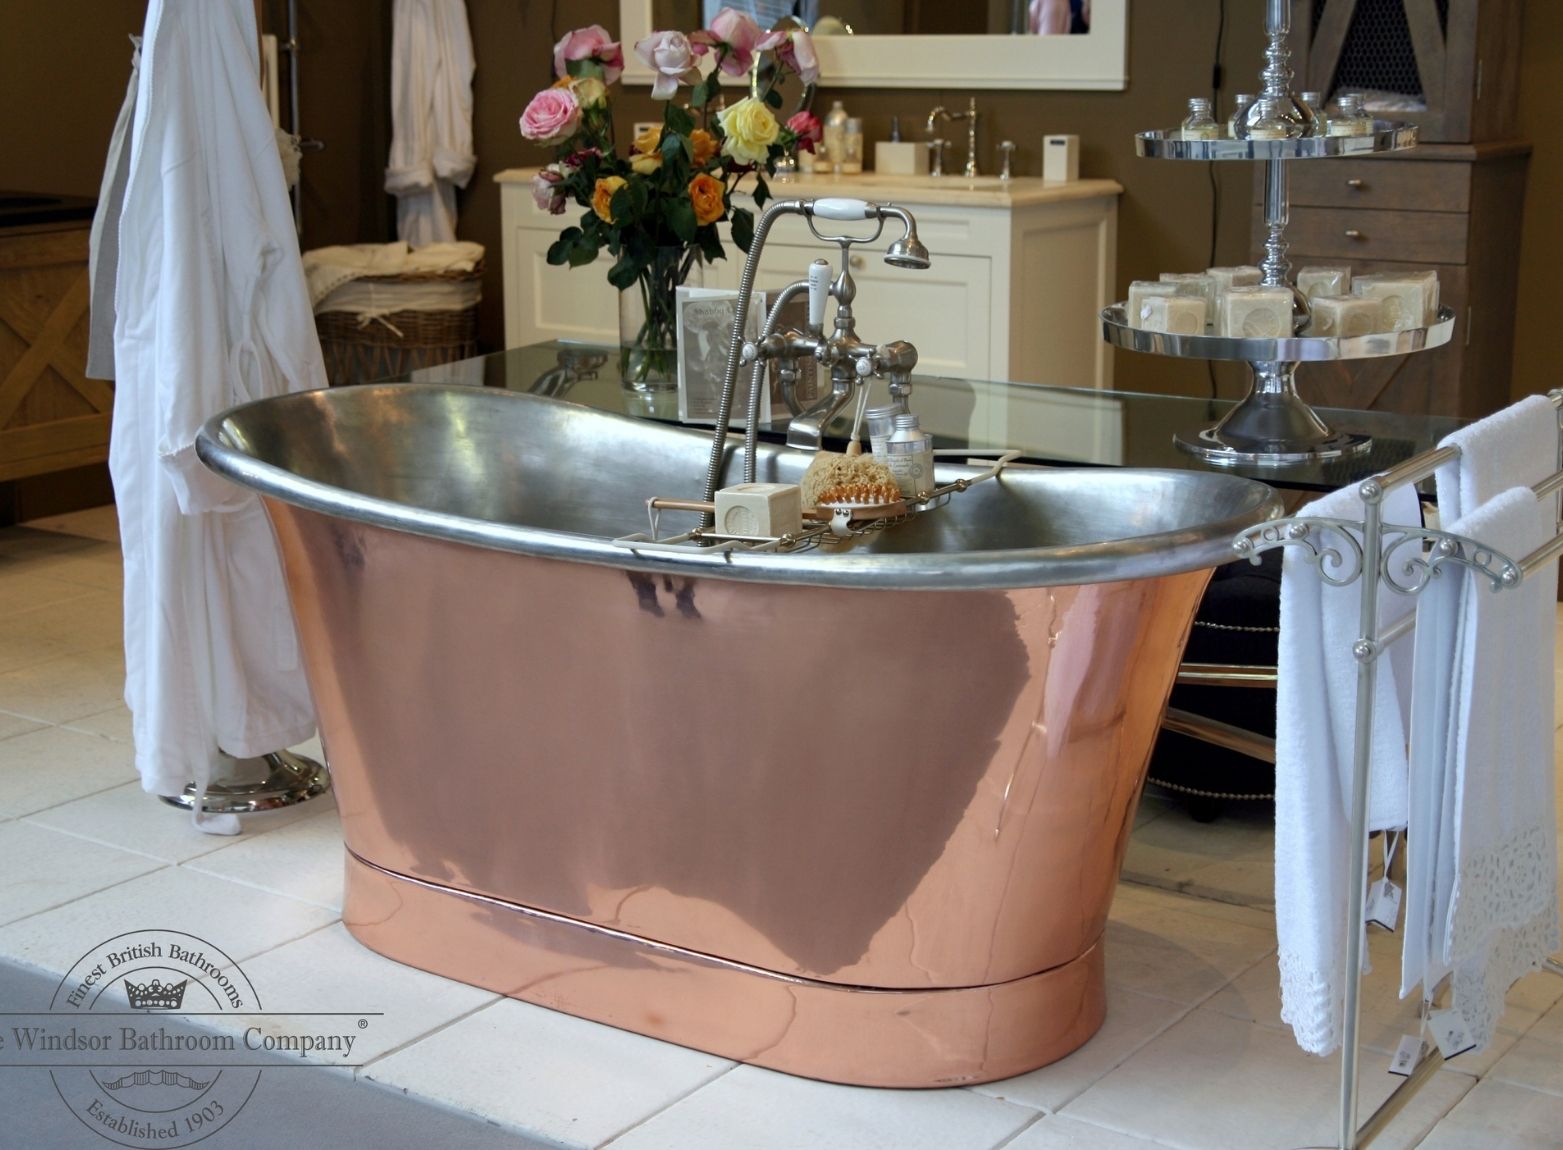 Foto : Koperen baden dieper dan de standaard baden